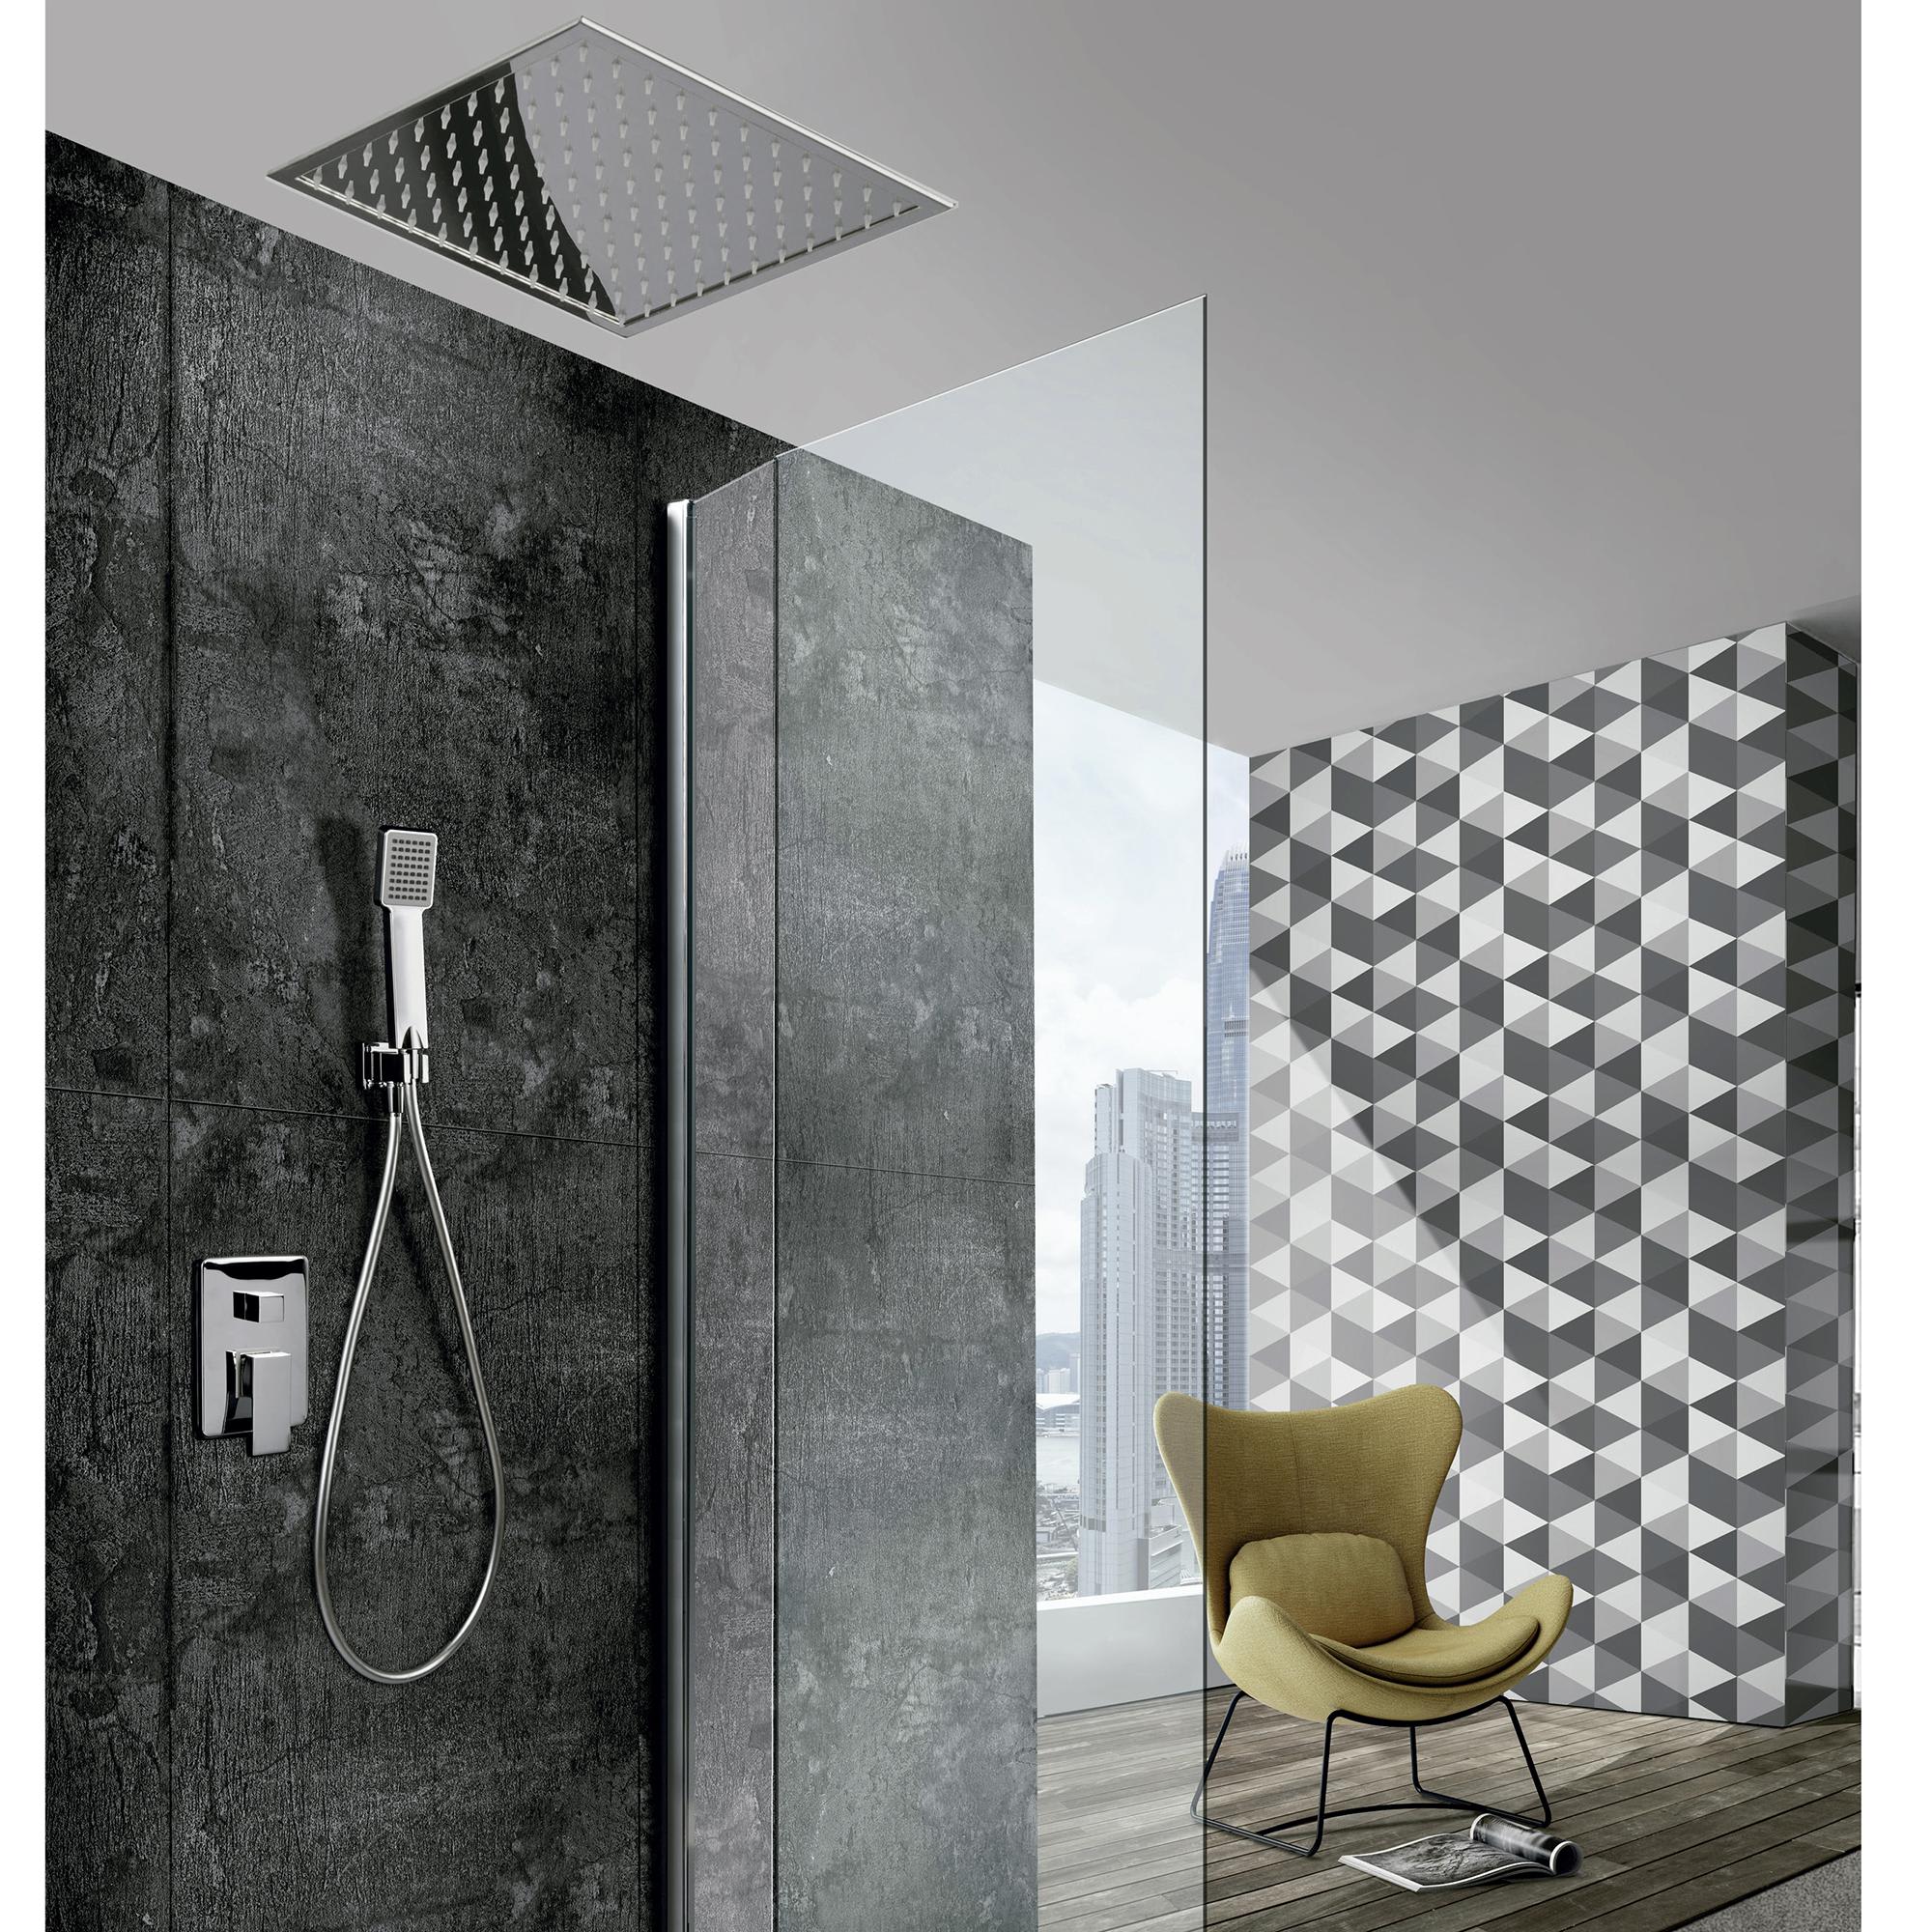 Conjunto de ducha redonda empotrada a techo fabricada en latón y acero  inoxidable de color cromado